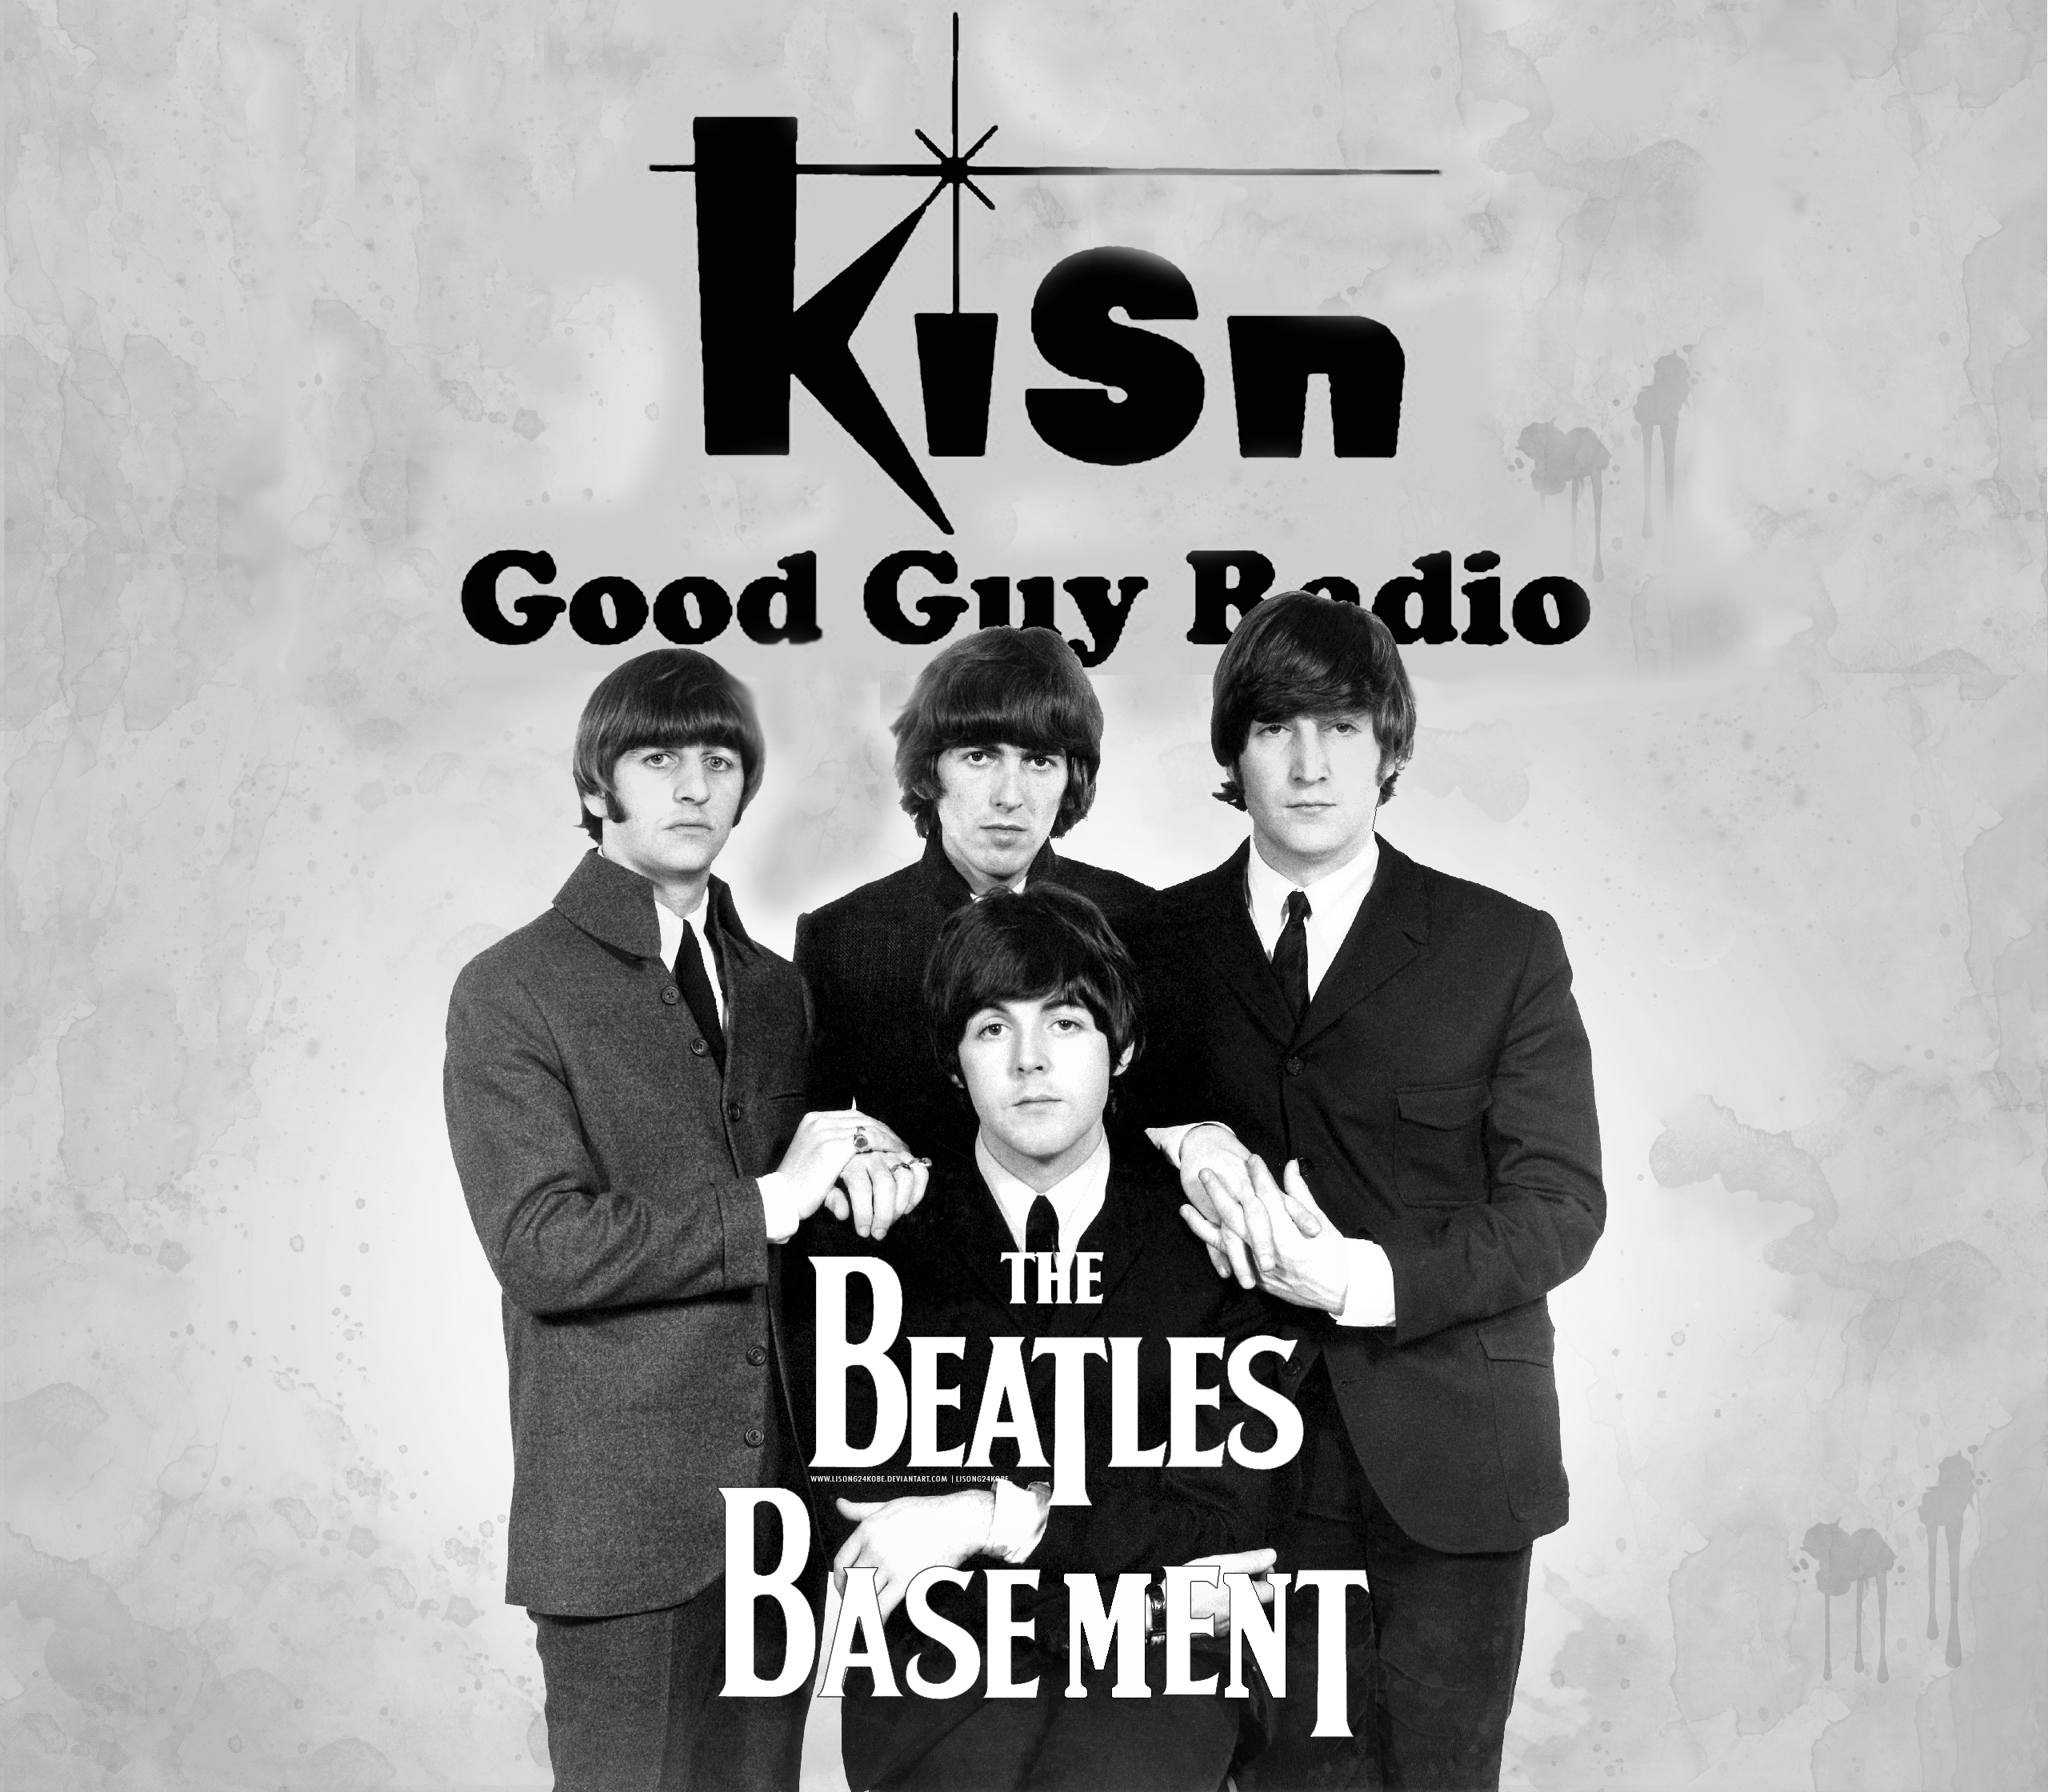 Beatles Basement